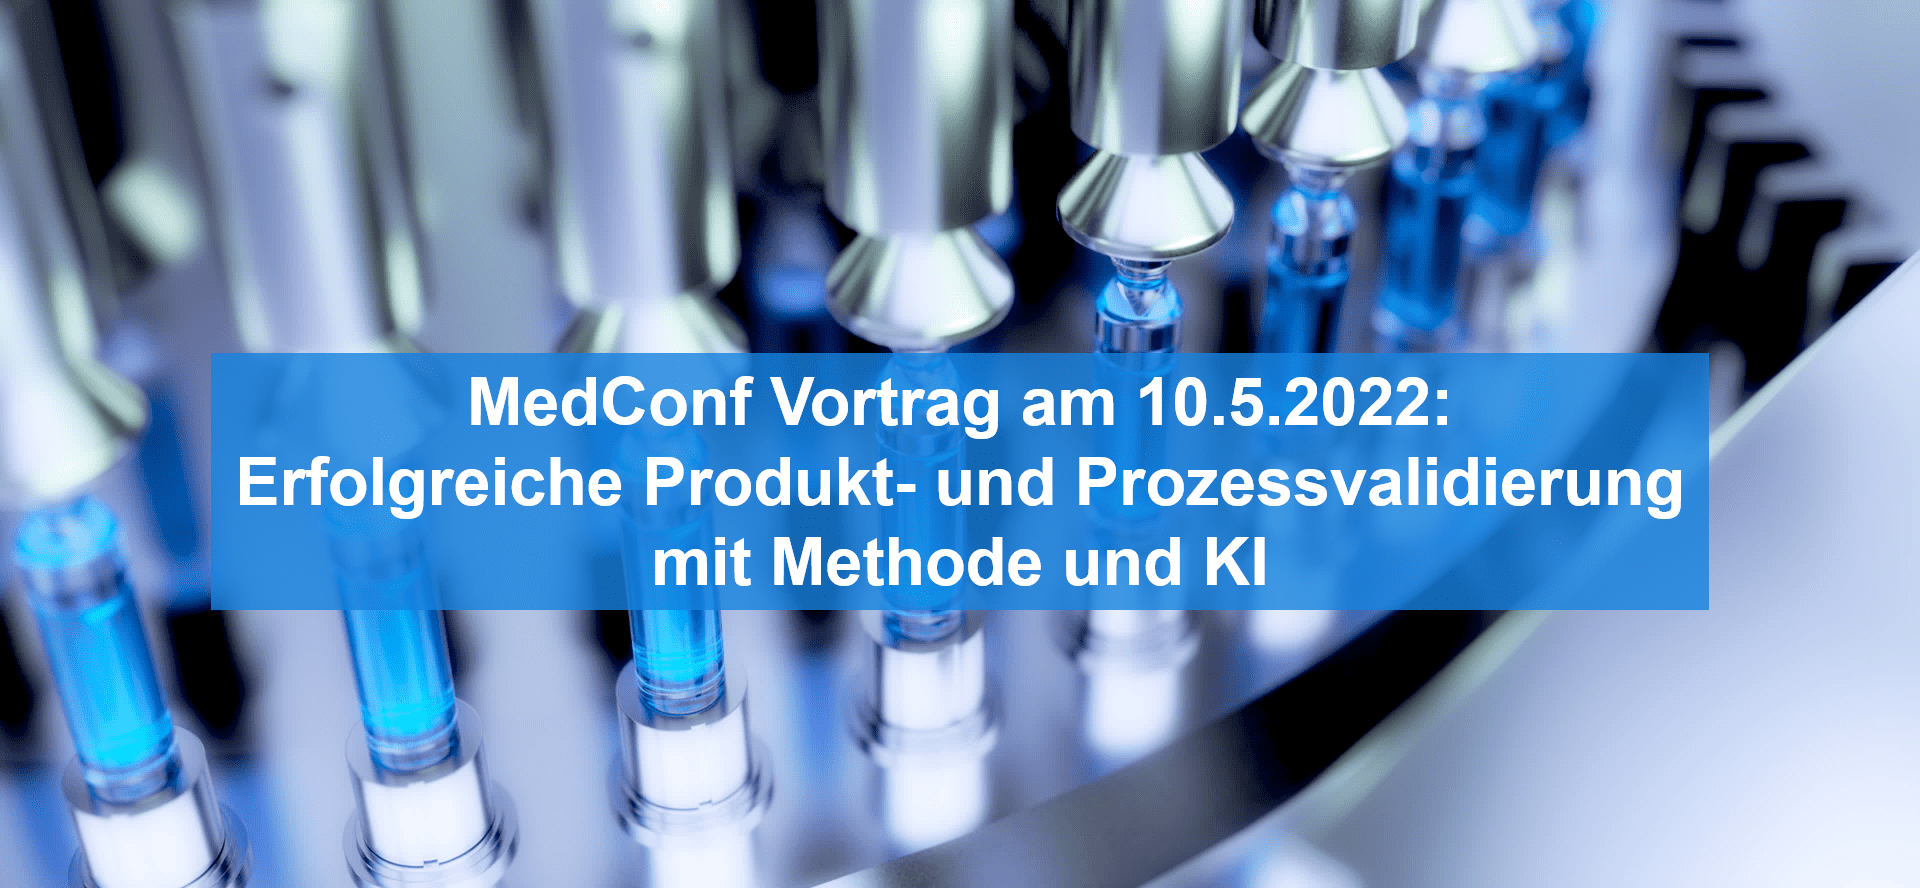 MedConf Vortrag am 10.5.2022: Erfolgreiche Produkt- und Prozessvalidierung mit Methode und KI